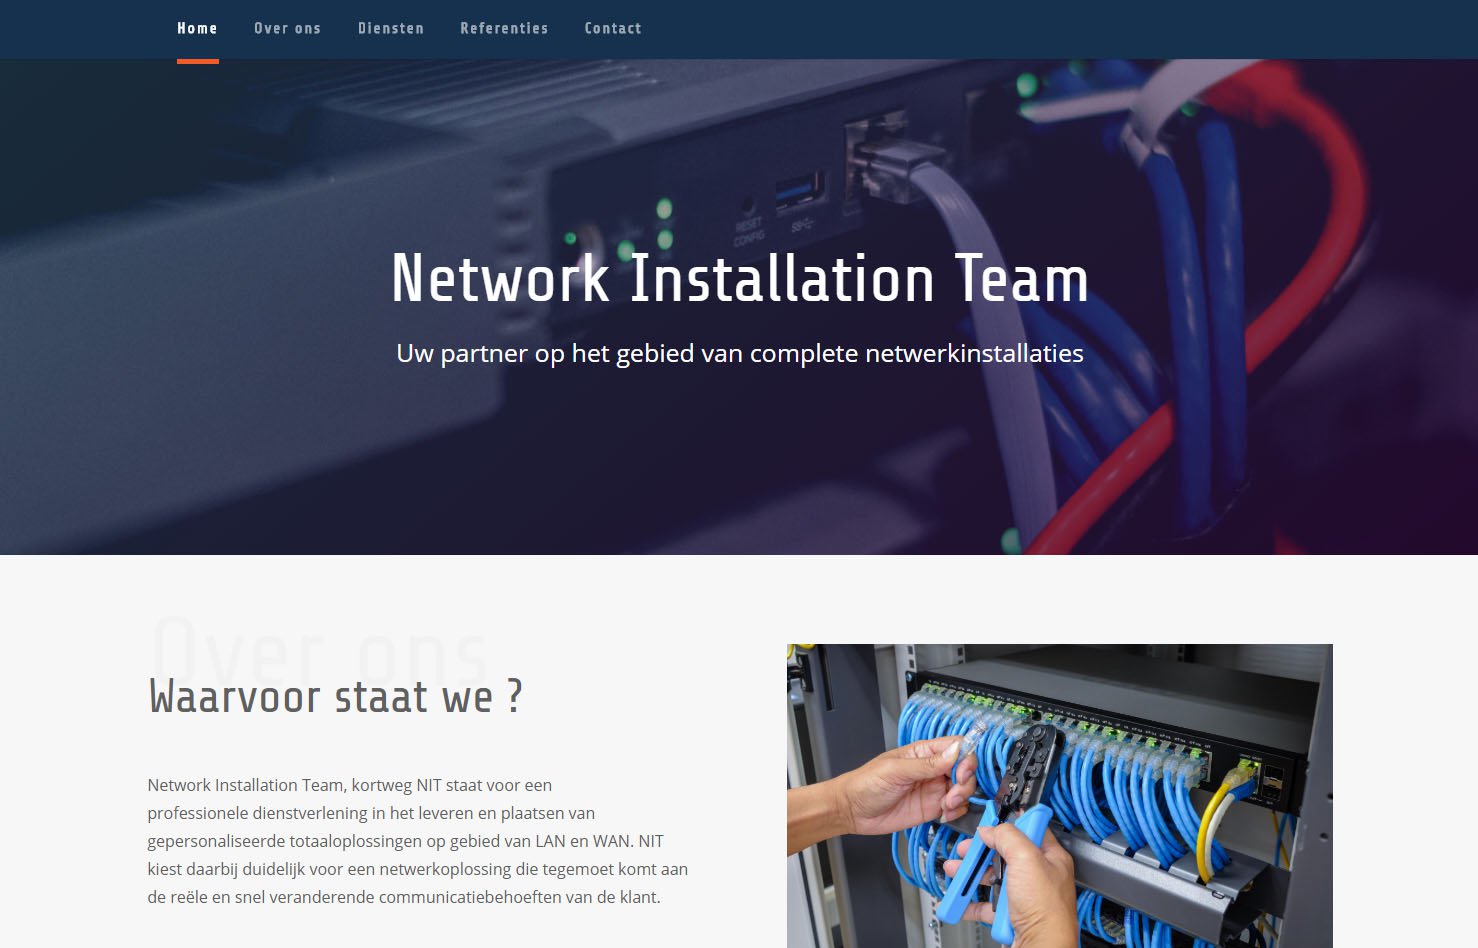 Network Installation Team